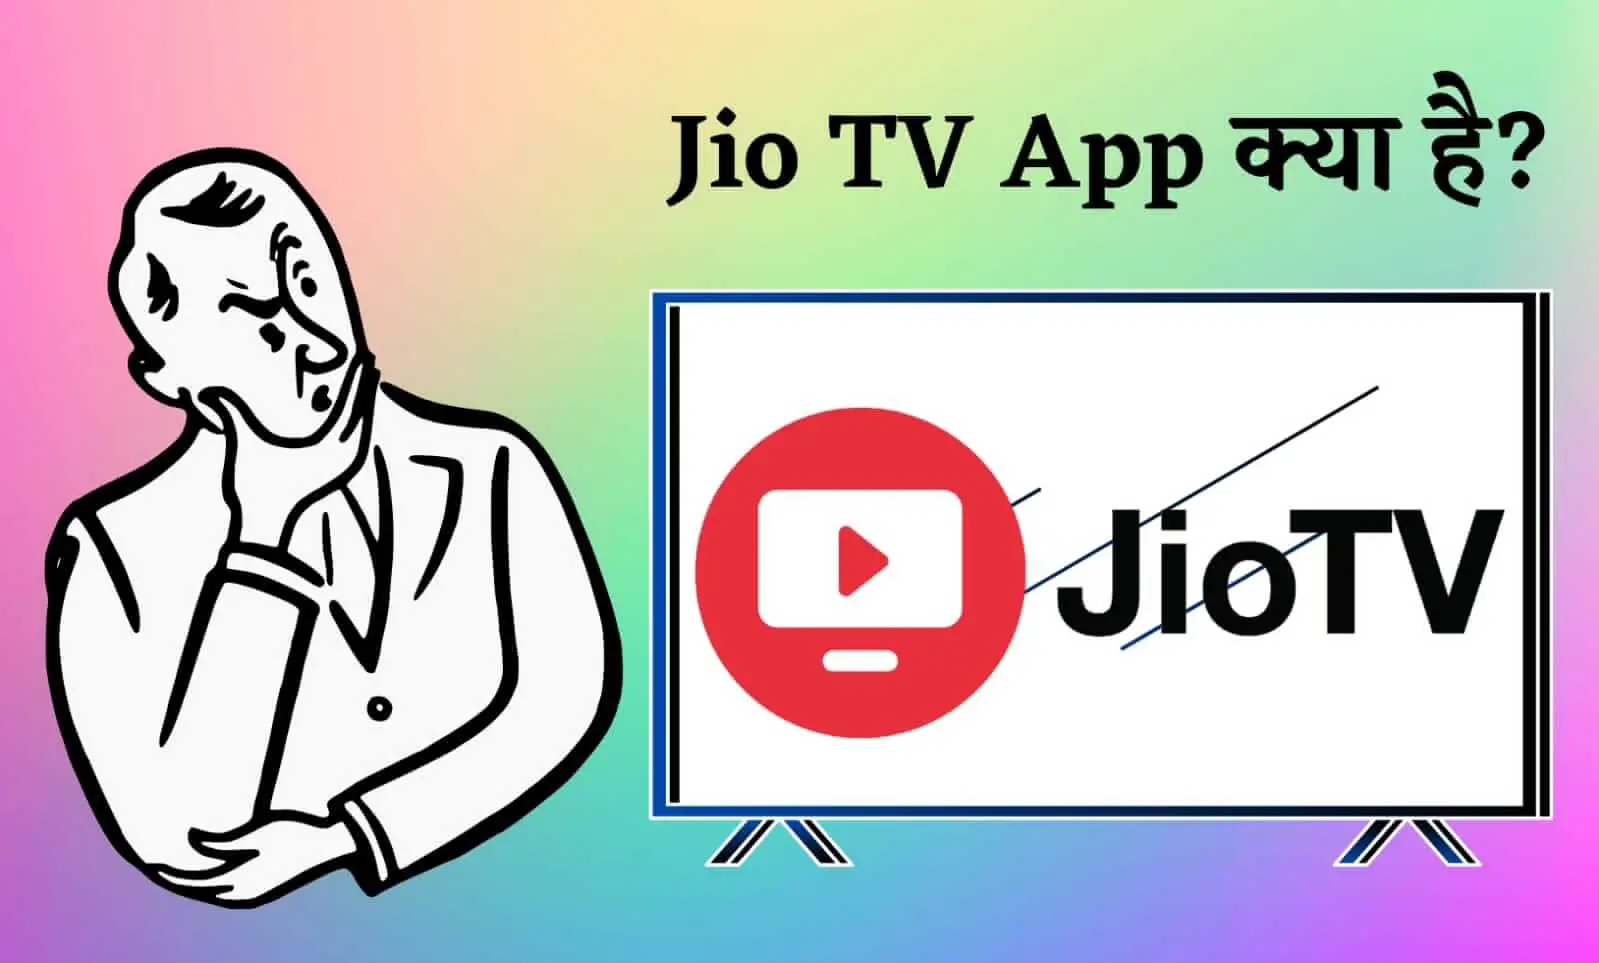 Jio TV App Kya Hai